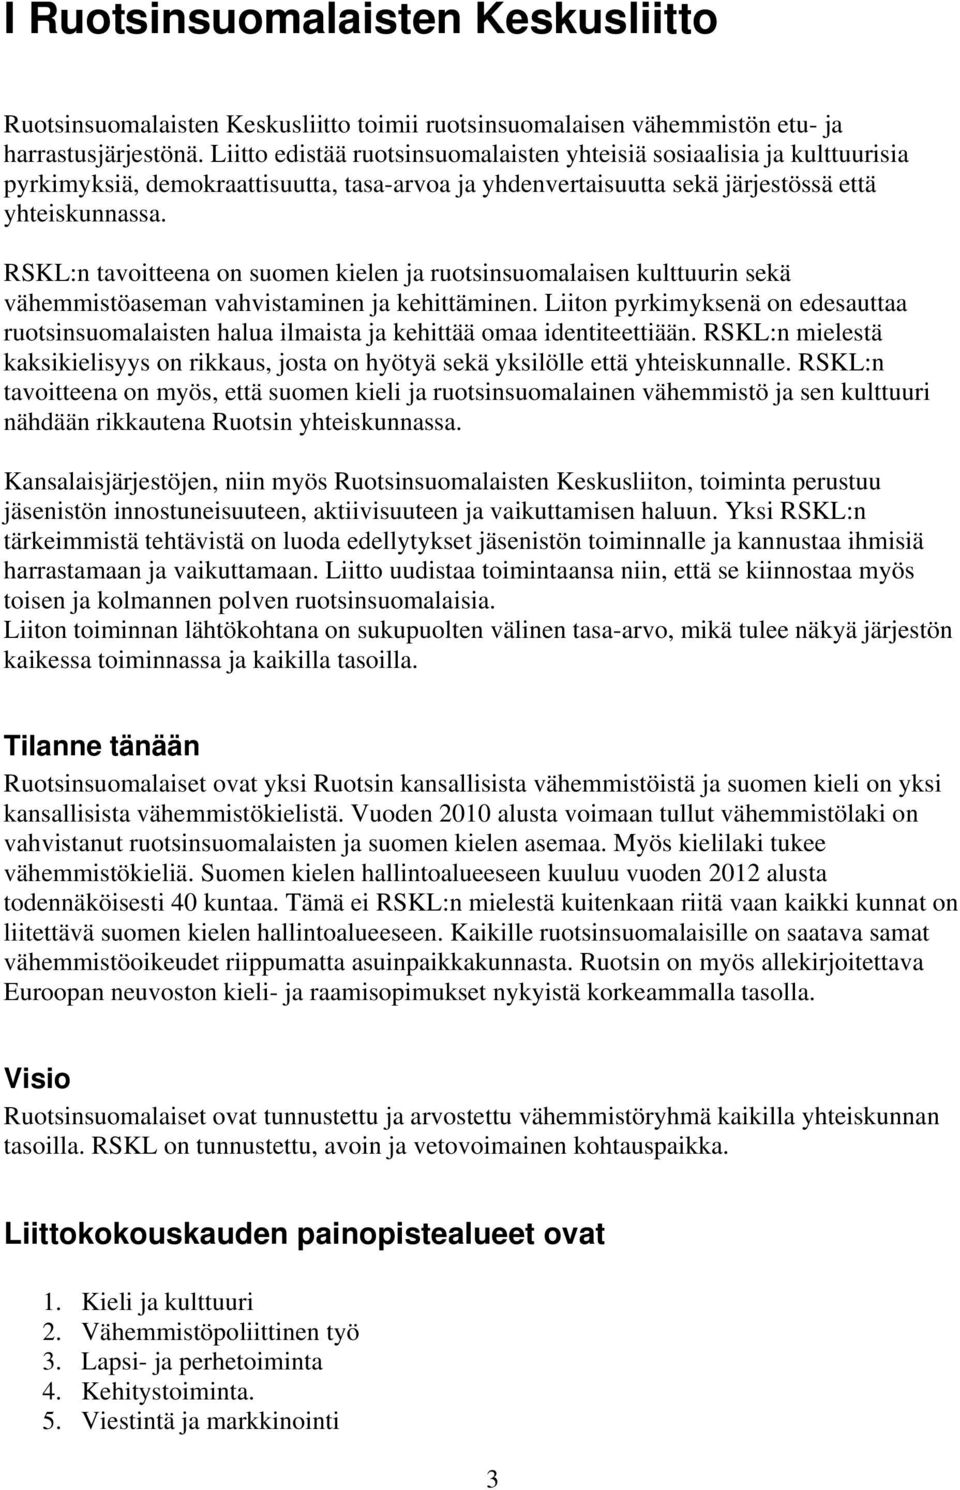 RSKL:n tavoitteena on suomen kielen ja ruotsinsuomalaisen kulttuurin sekä vähemmistöaseman vahvistaminen ja kehittäminen.